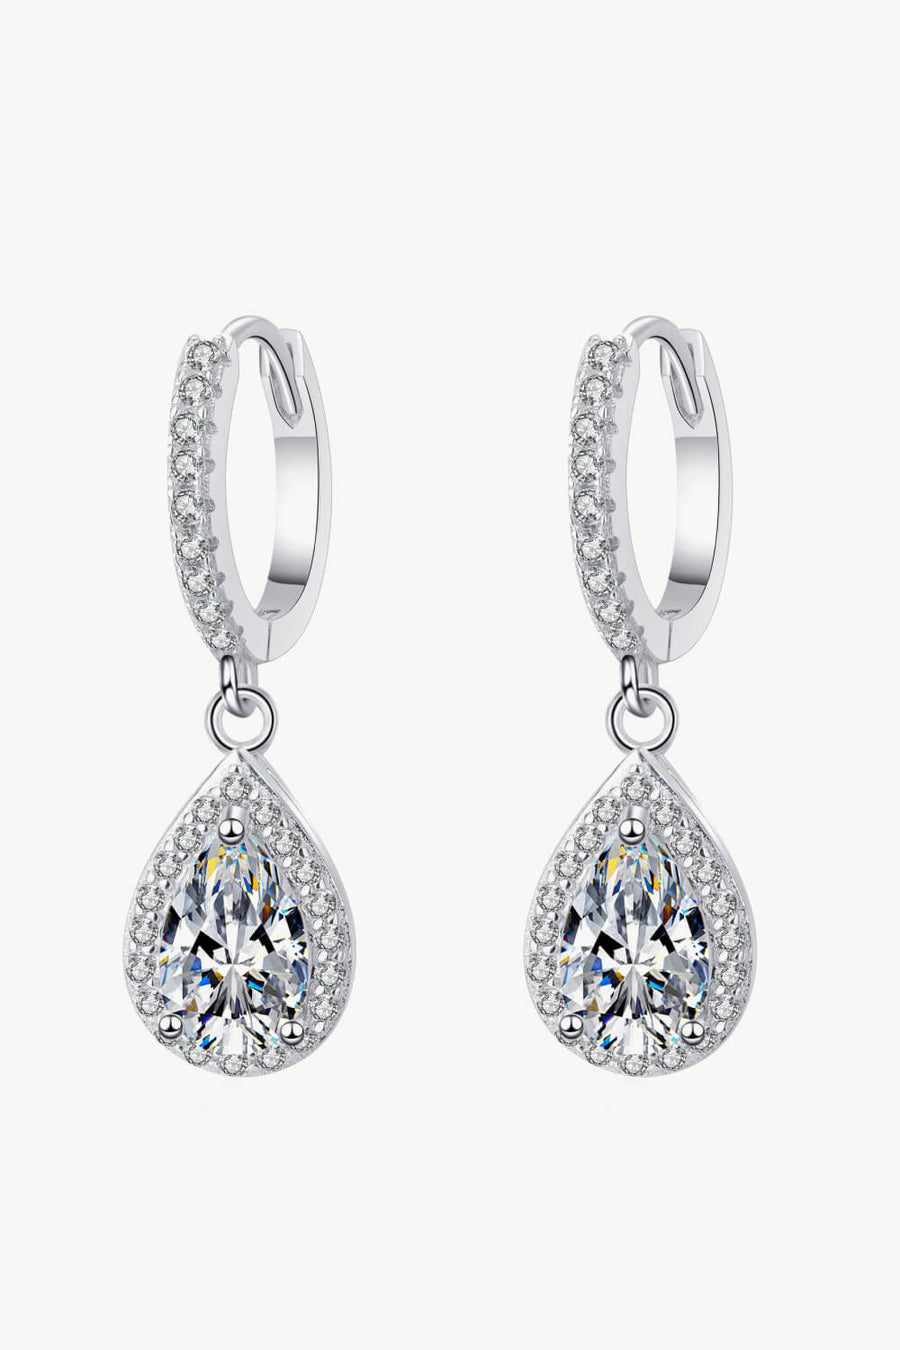 Best Diamond Jewelry Bundle Set Gift | Best Teardrop Pear Diamond Necklace, Earrings Jewelry Gift for Women, Mother, Wife, Daughter | MASON New York